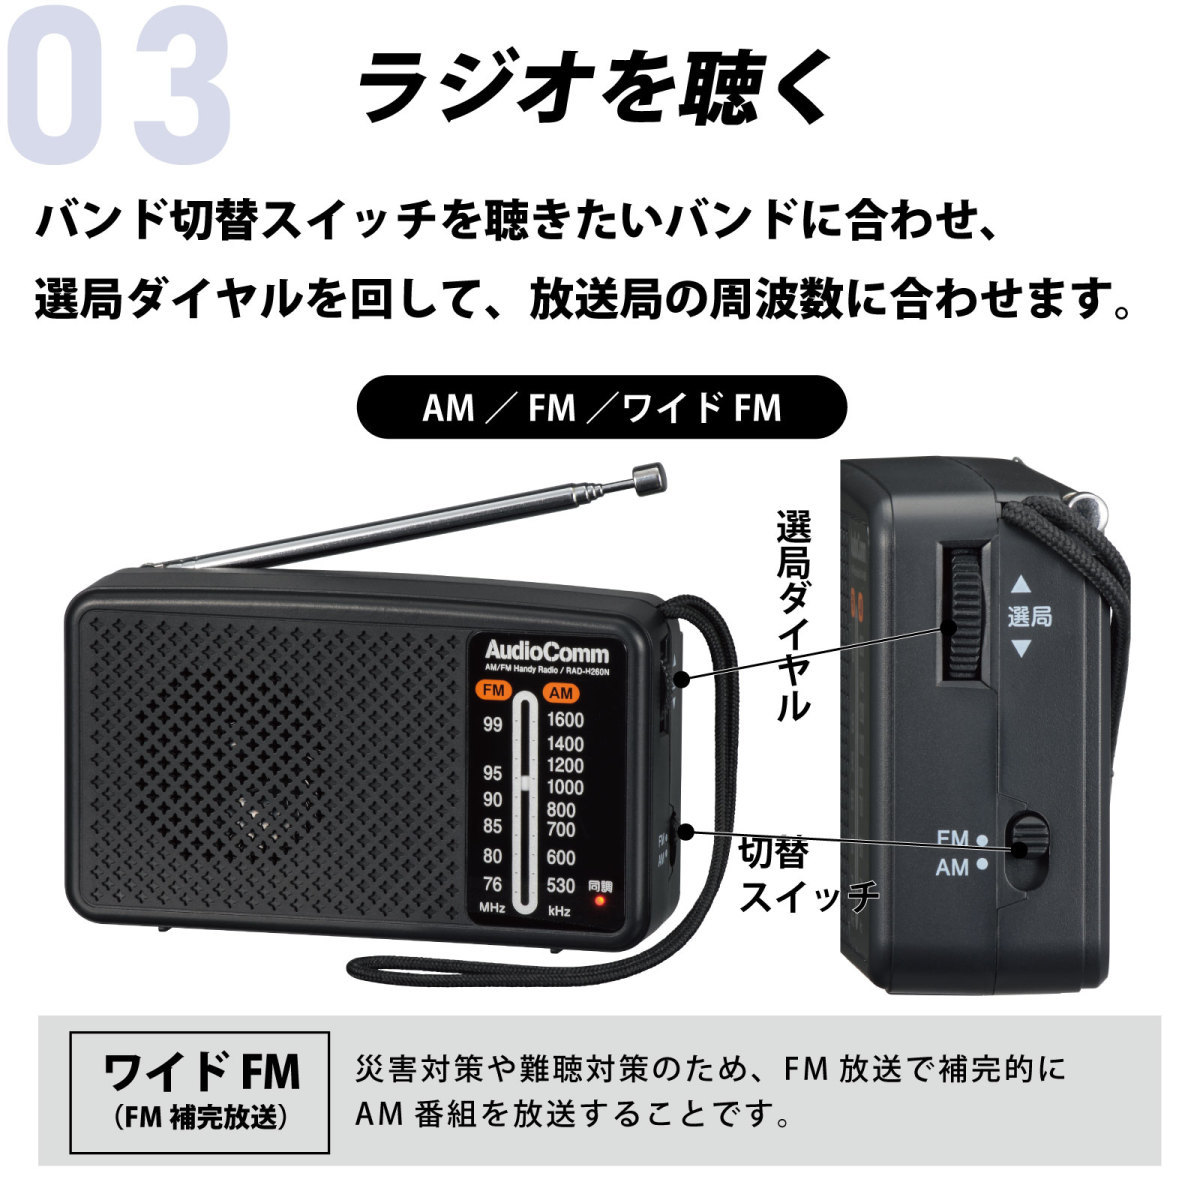 ラジオ 小型 防災ラジオ スタミナハンディラジオ AudioComm｜RAD-H260N 03-5530 オーム電機_画像4